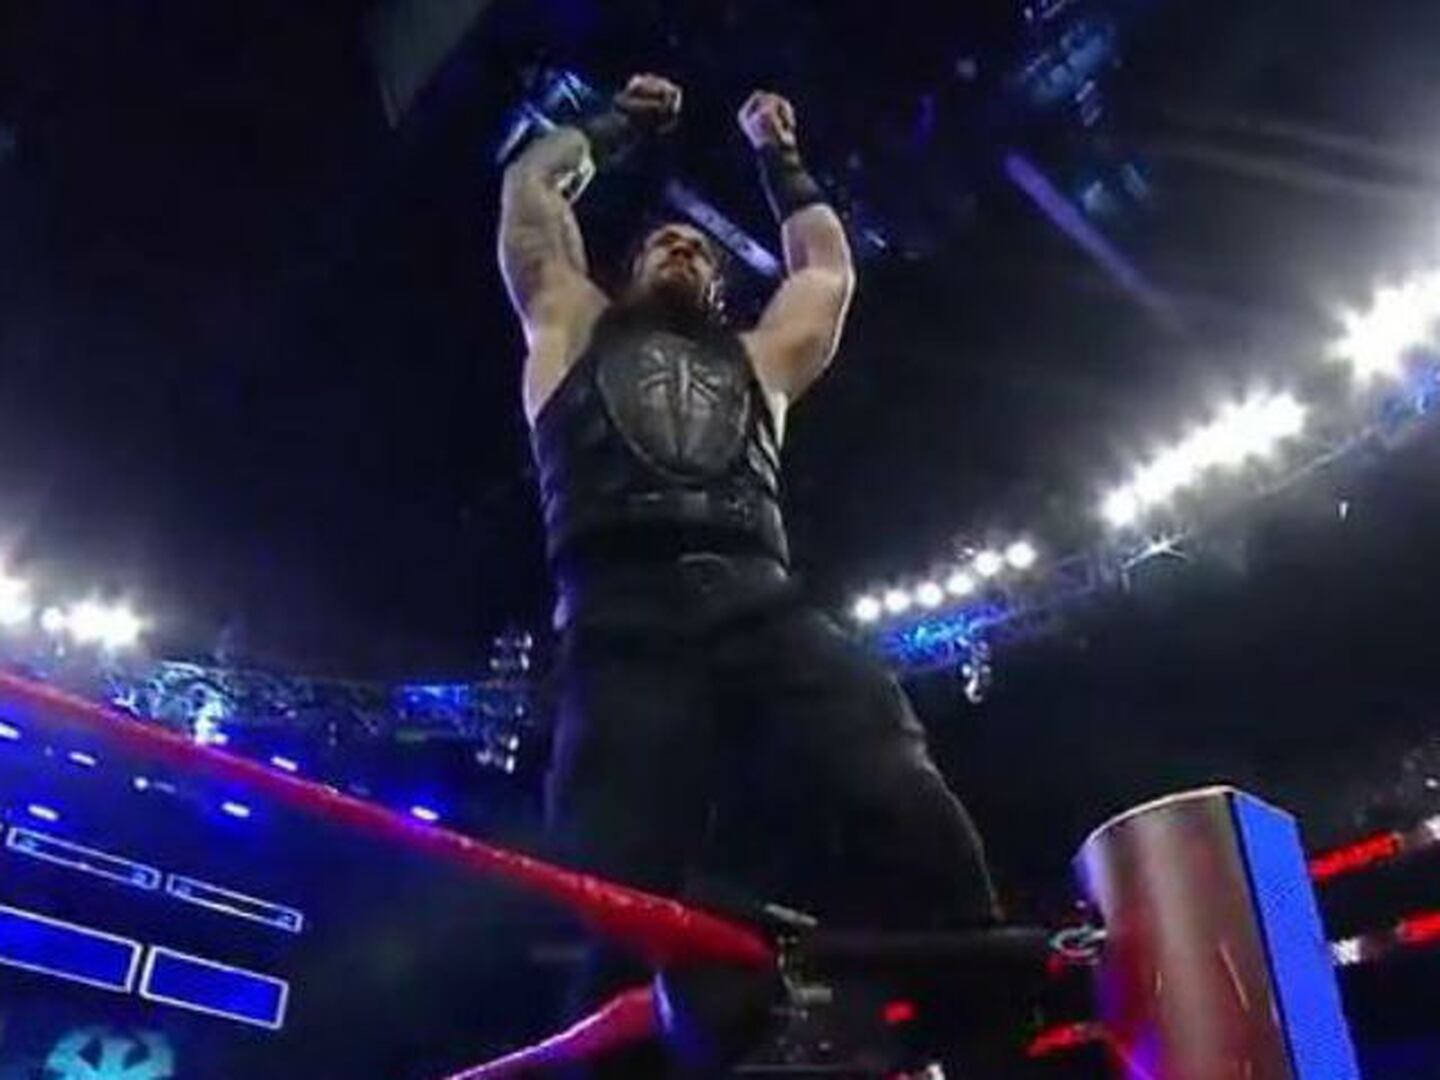 Roman Reigns explotó y venció a Braun Strowman y The Undertaker